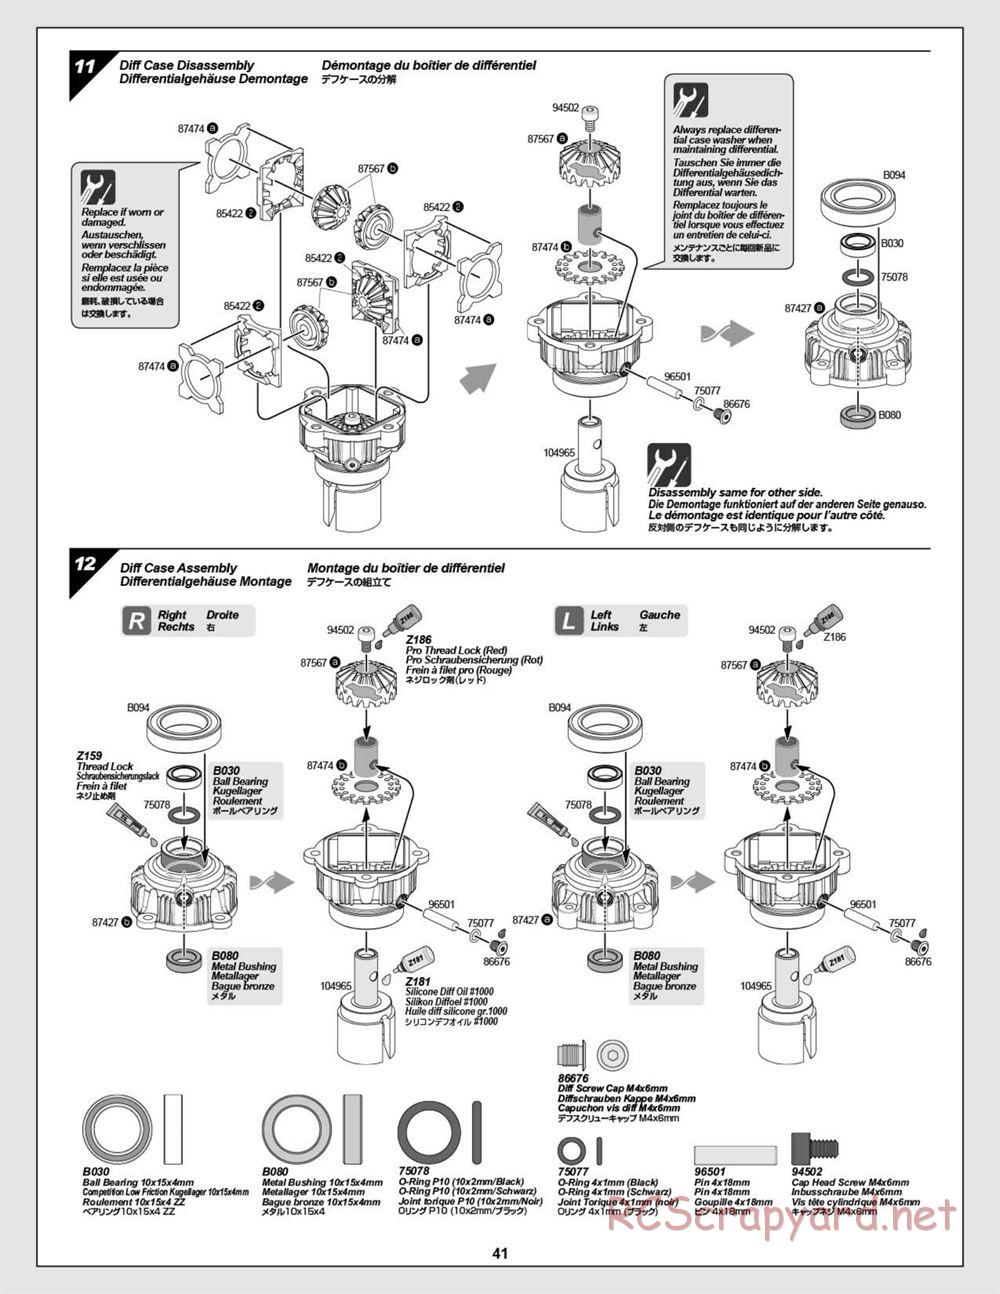 HPI - Baja 5B Flux Buggy - Manual - Page 41